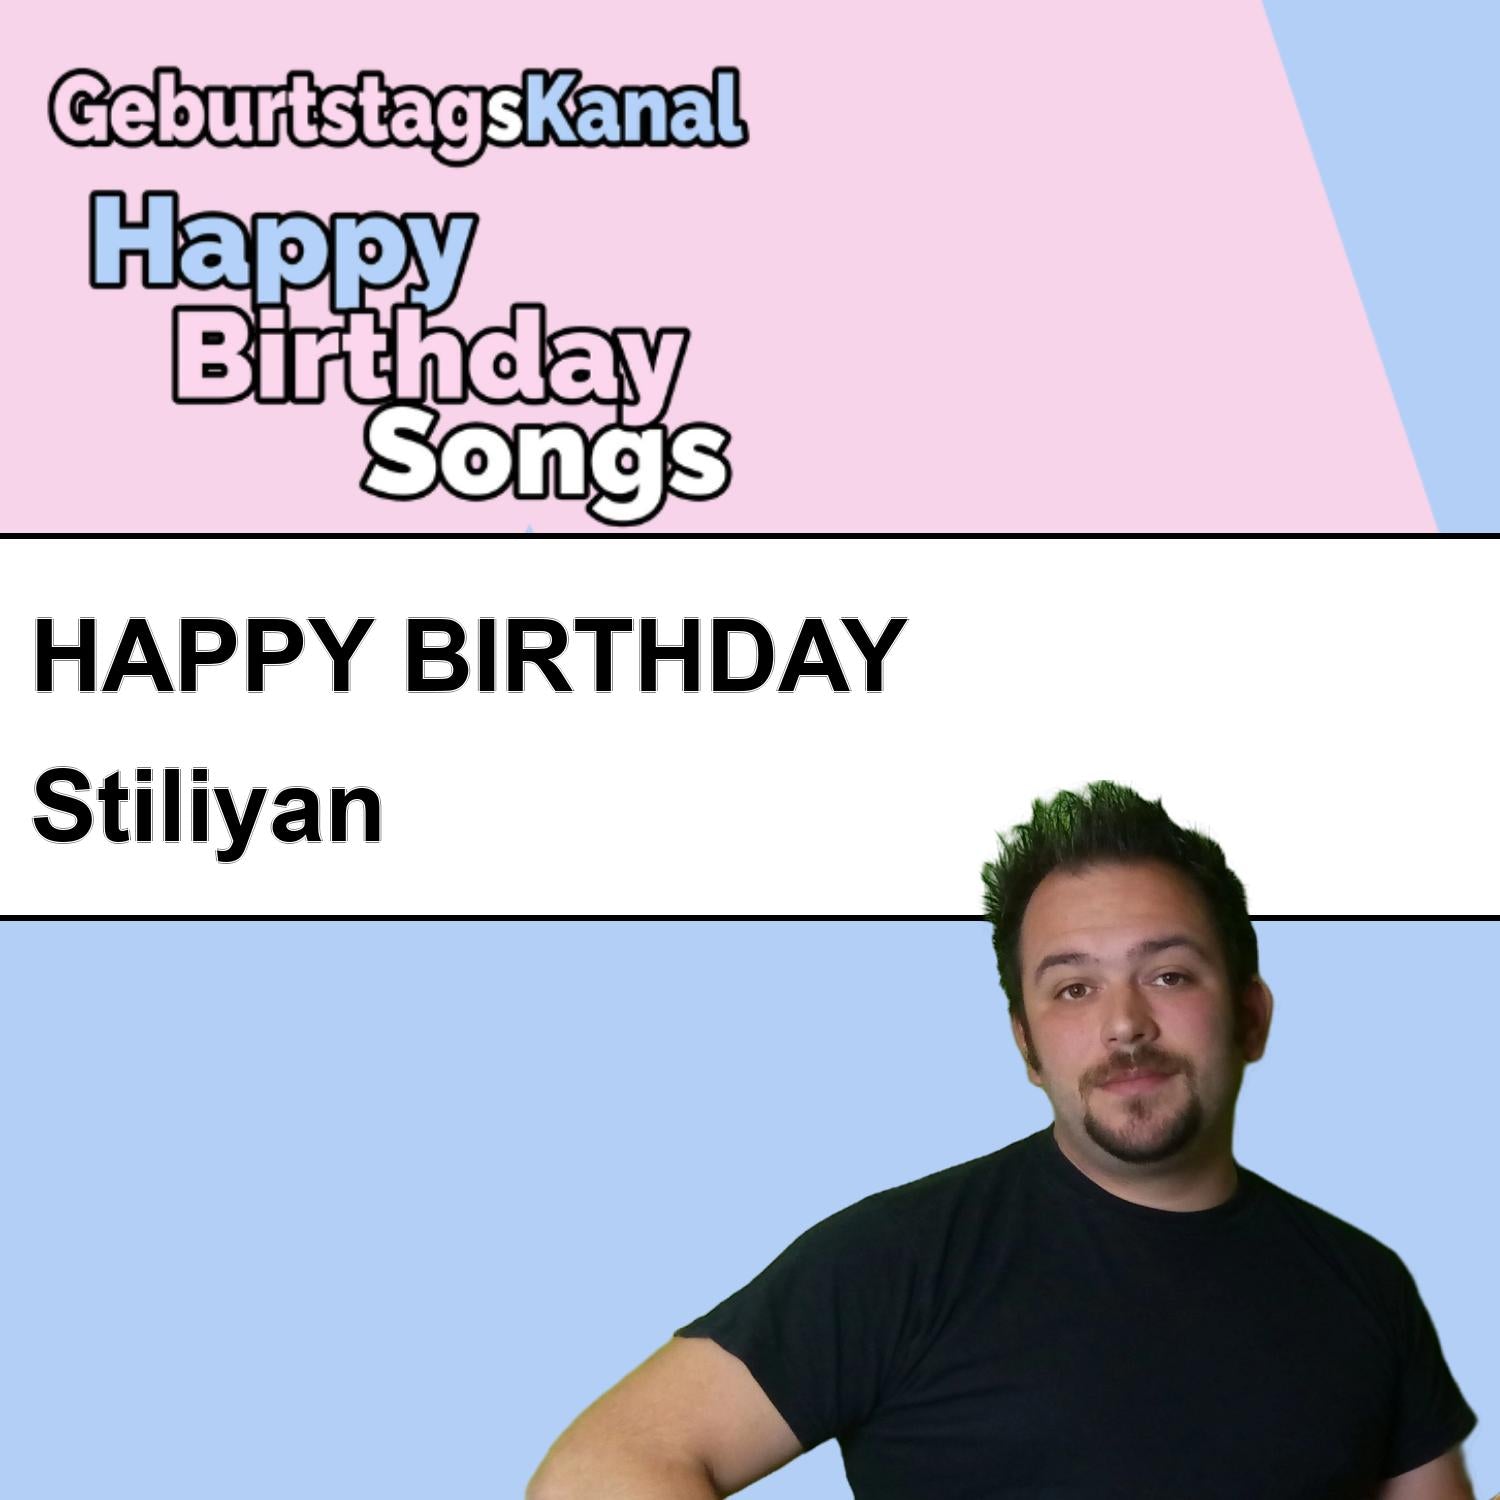 Produktbild Happy Birthday to you Stiliyan mit Wunschgrußbotschaft